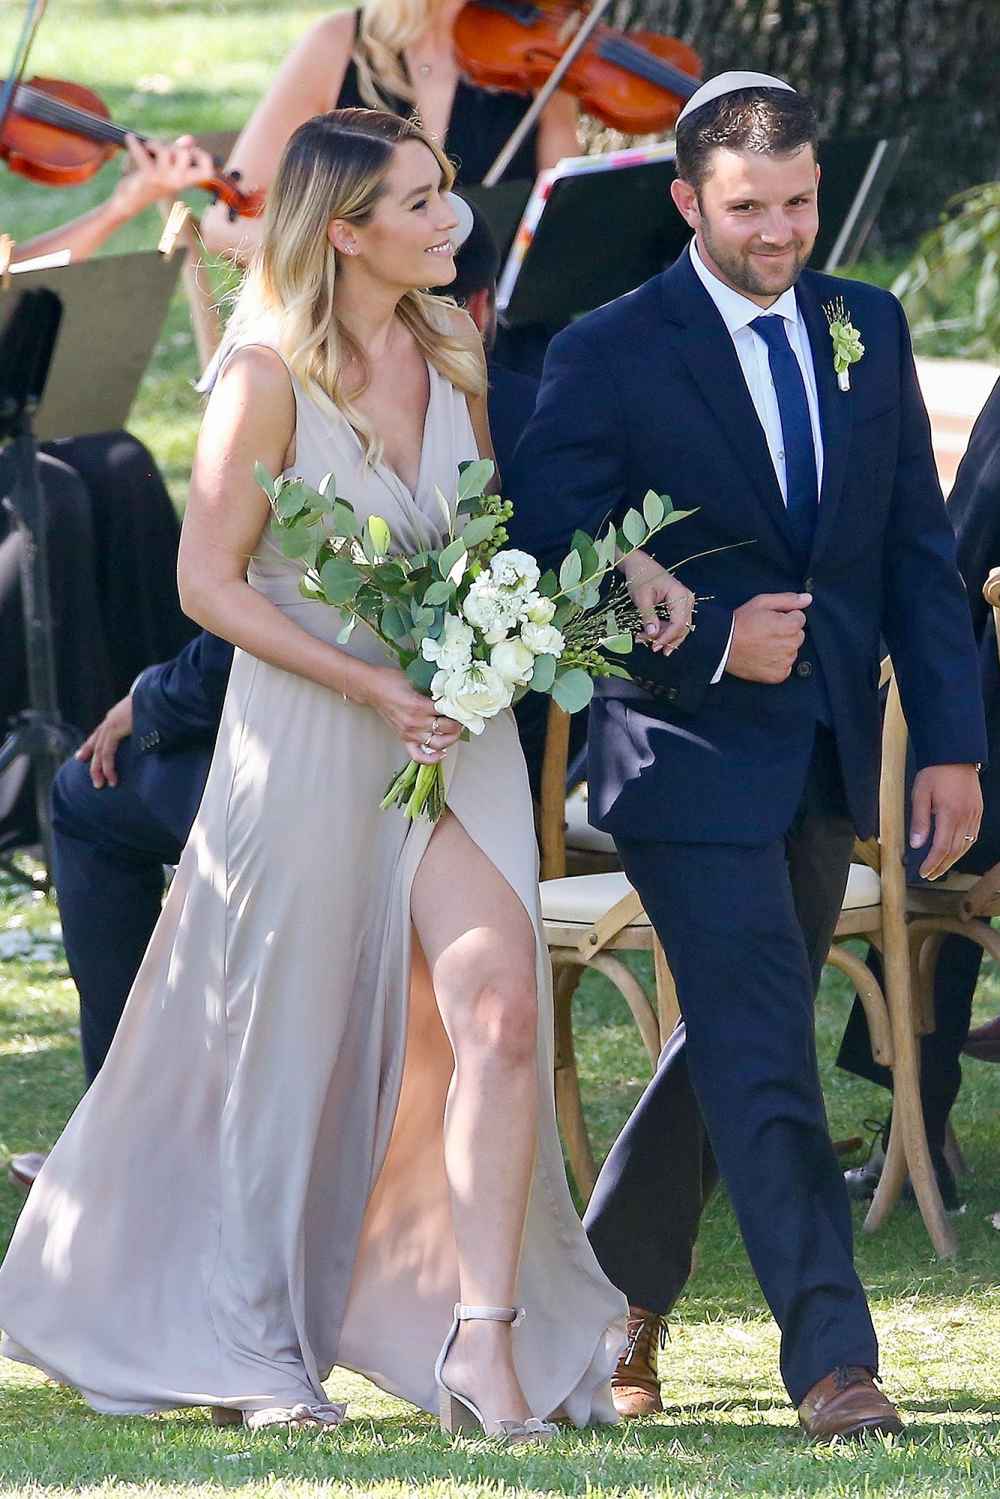 Lauren Conrad Walks Down the Aisle as a Bridesmaid in Friend's